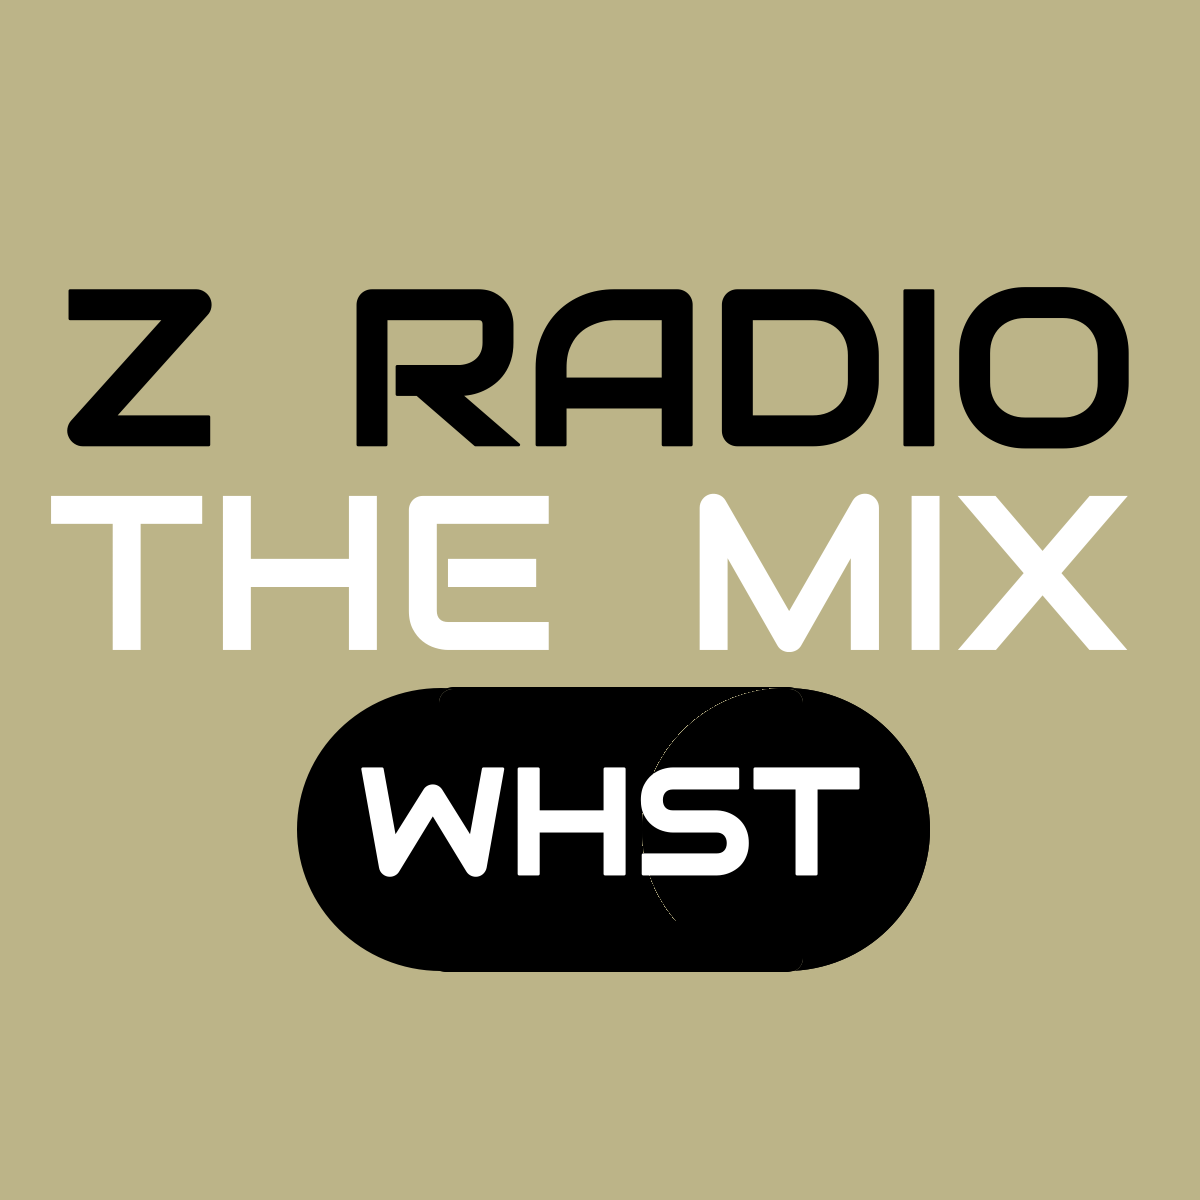 Art for Z RADIO Broadcasting WW Celebrating Jesus by Z Radio The Mix